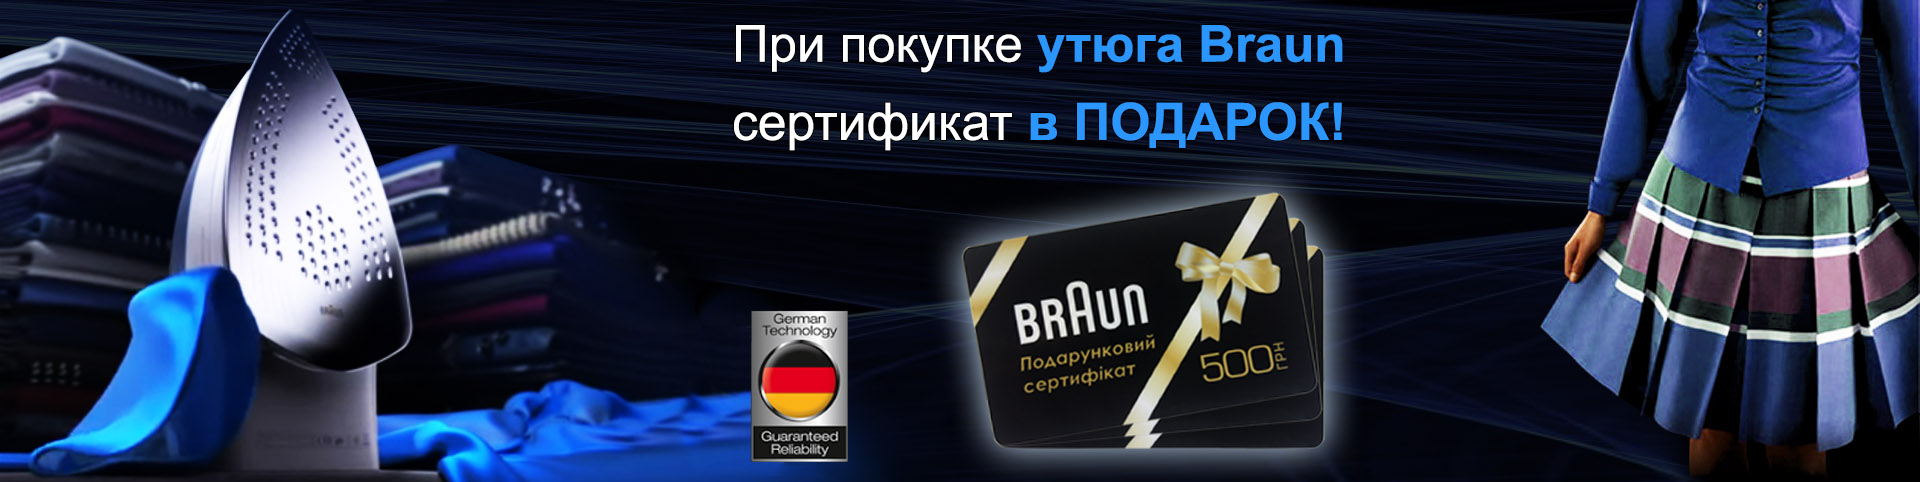 Покупая утюг Braun, в подарок вы получаете сертификат на 500 грн